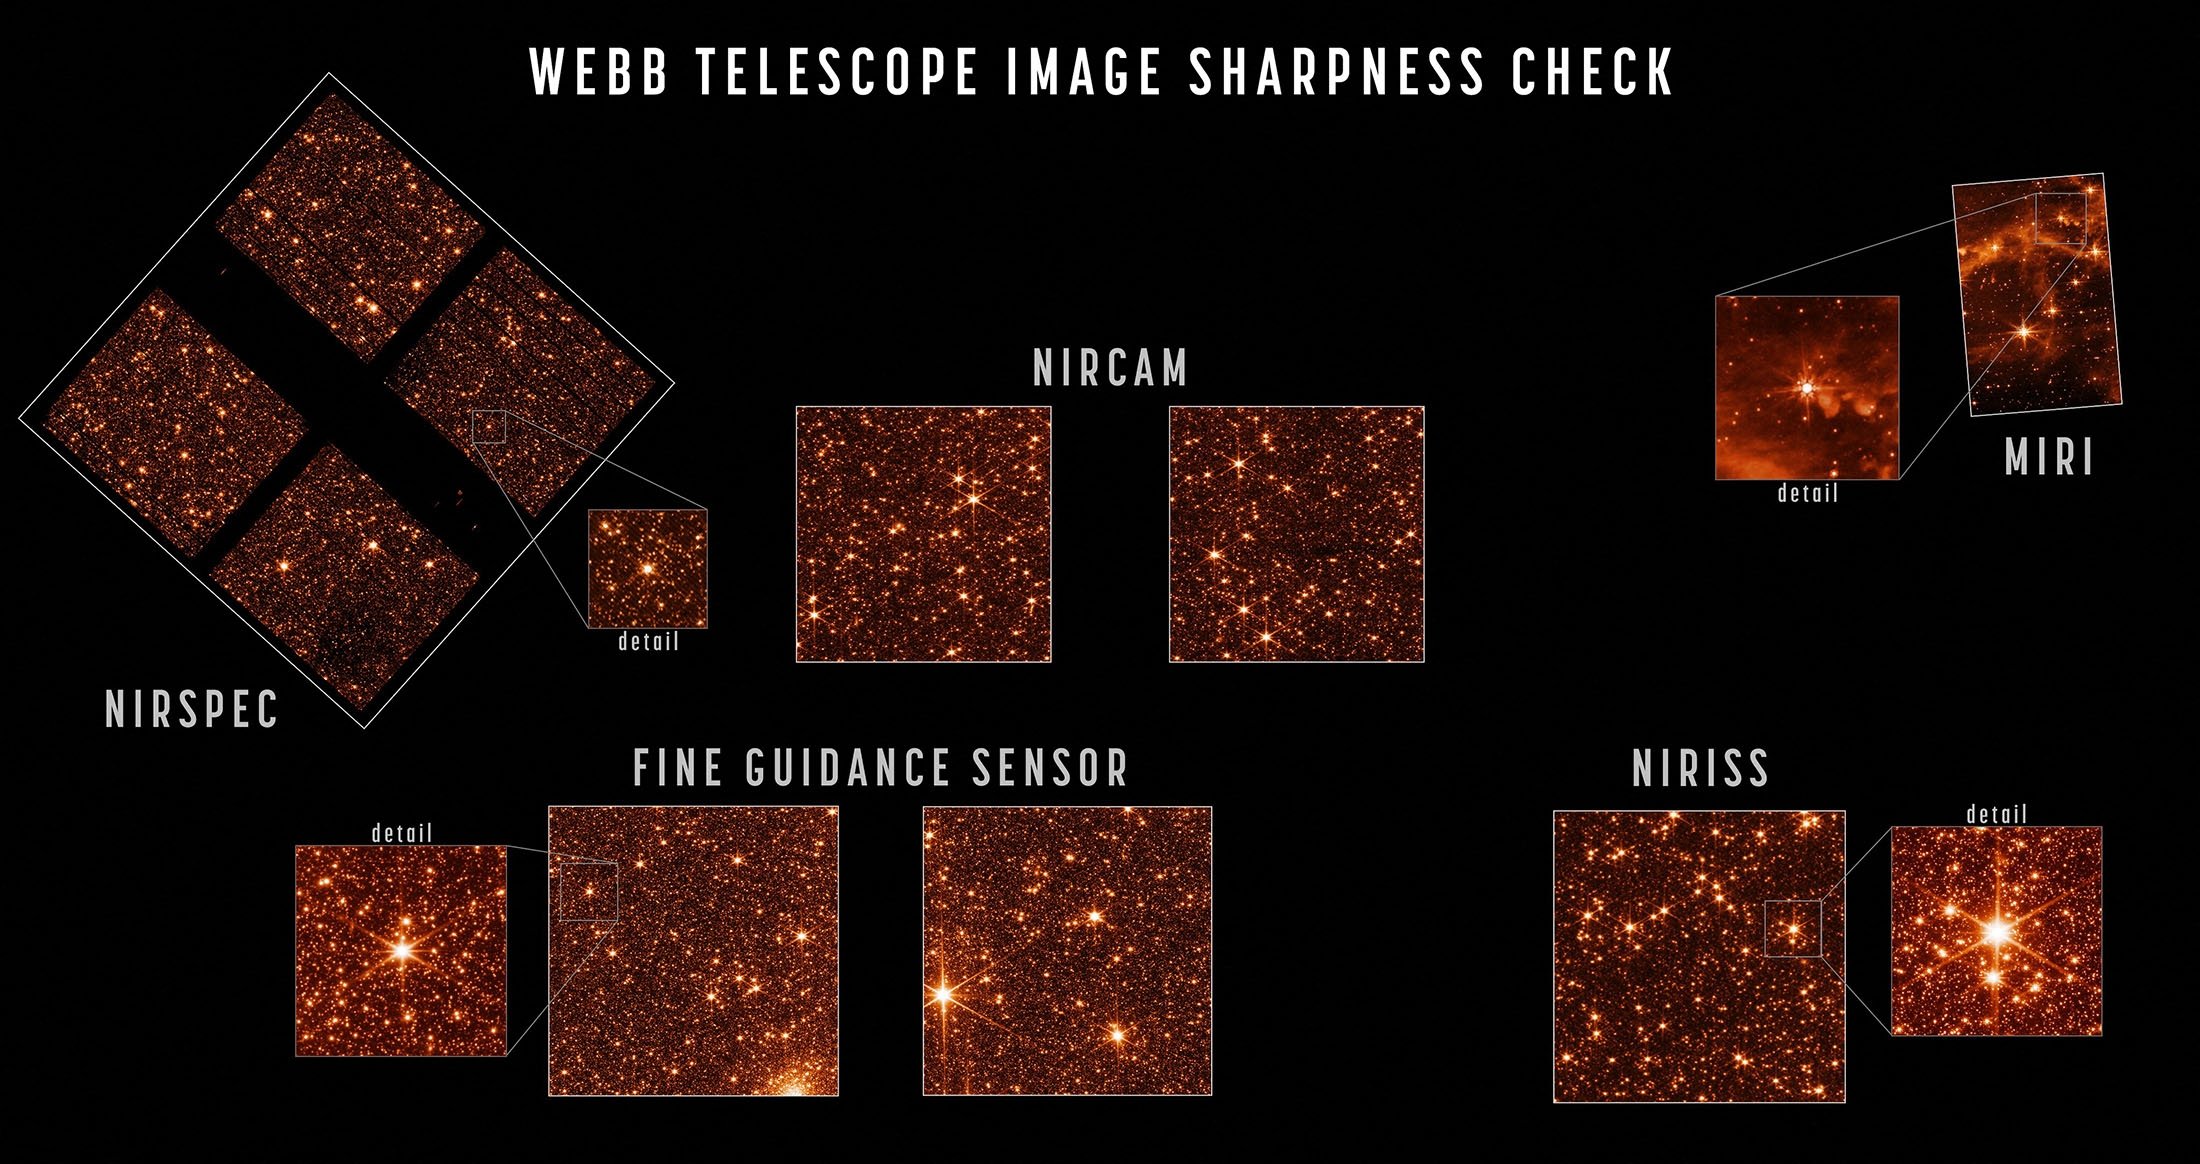 Gambar teknik bintang yang terfokus tajam di bidang pandang setiap instrumen menunjukkan bahwa Teleskop Webb sepenuhnya selaras dan fokus.  (NASA via AFP)